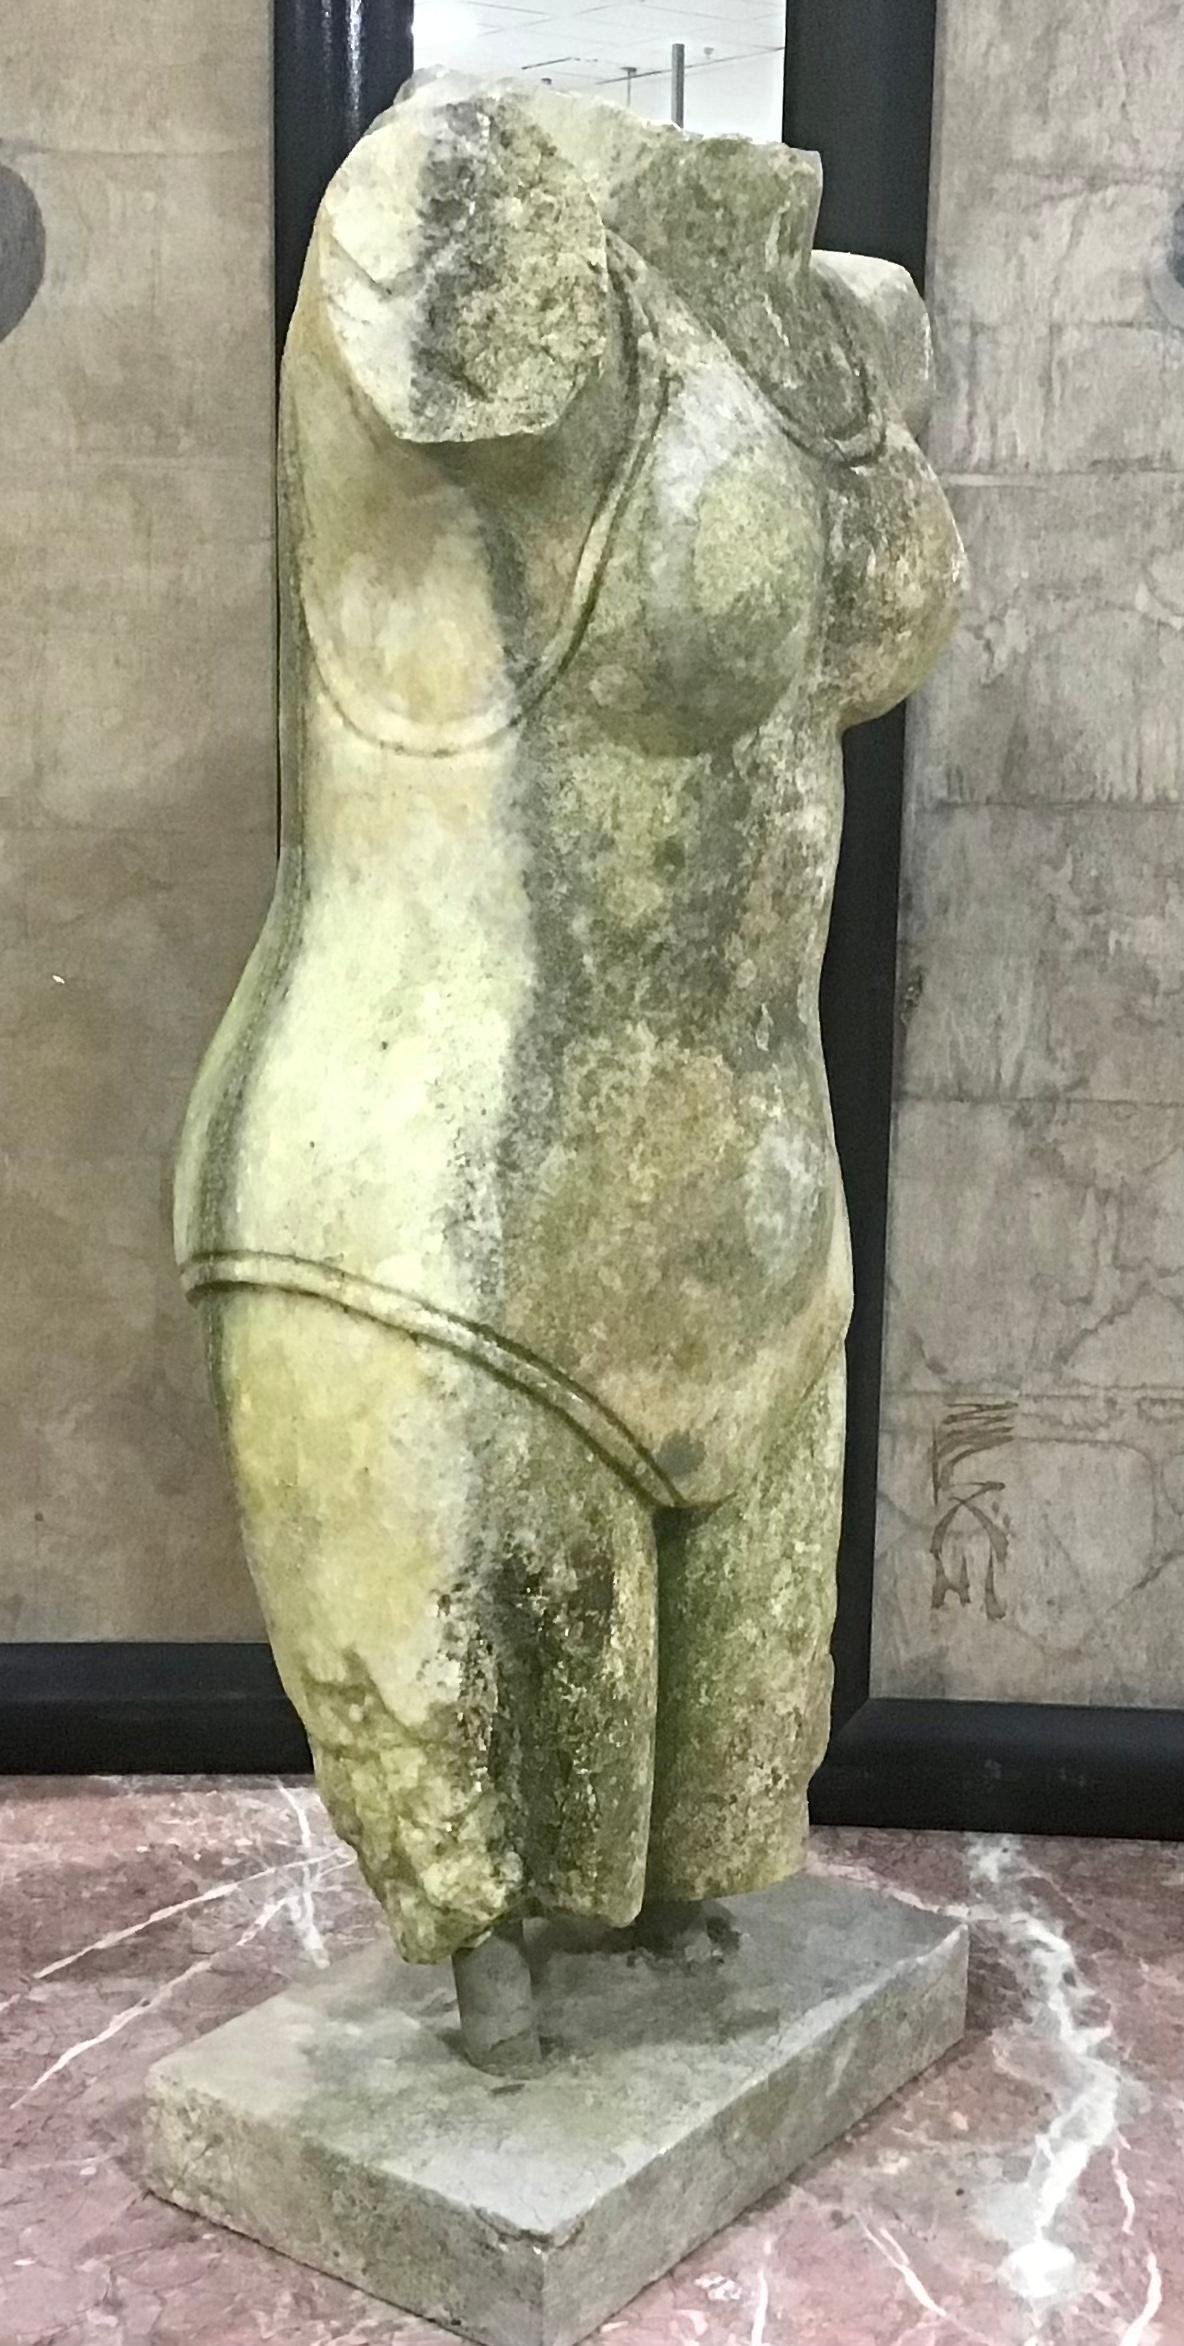 Statue sculptée en marbre Carrera de style indien. Torse de femme en marbre. 
Marbre Carrera. Monté sur un socle en pierre. Joliment sculpté et sa surface générale présente une patine d'usure naturelle.